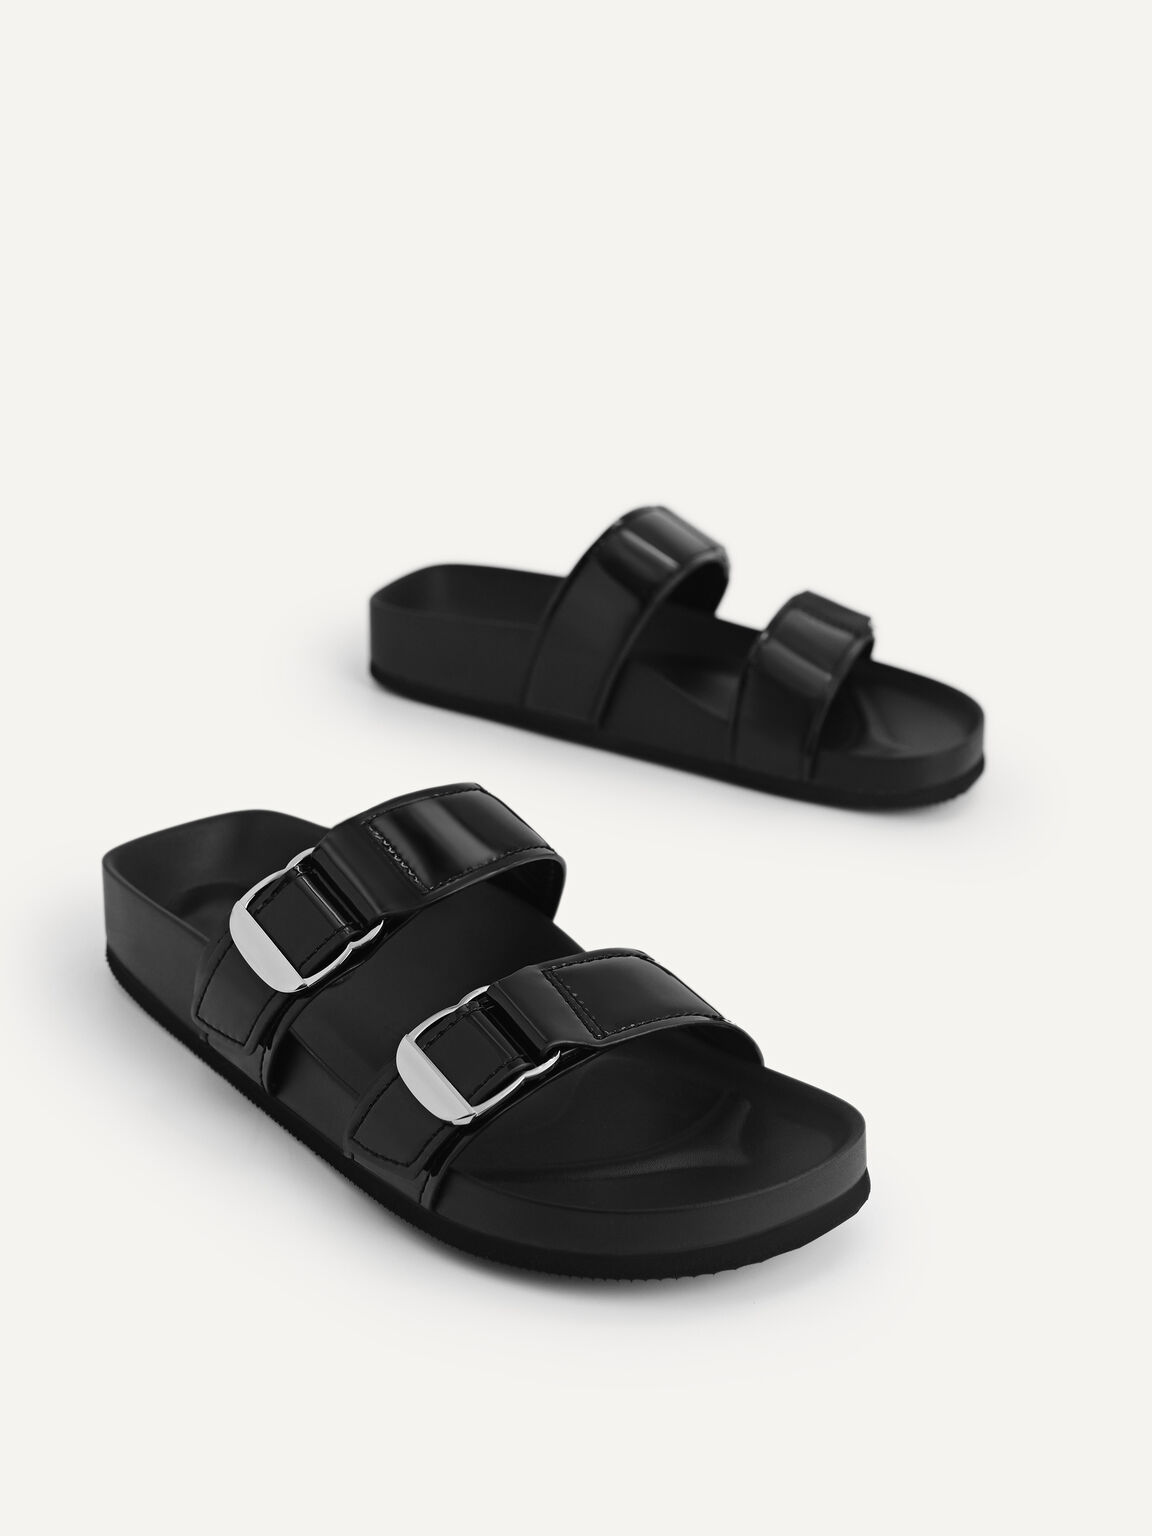 Patent Double Strap Sandals, Black, hi-res